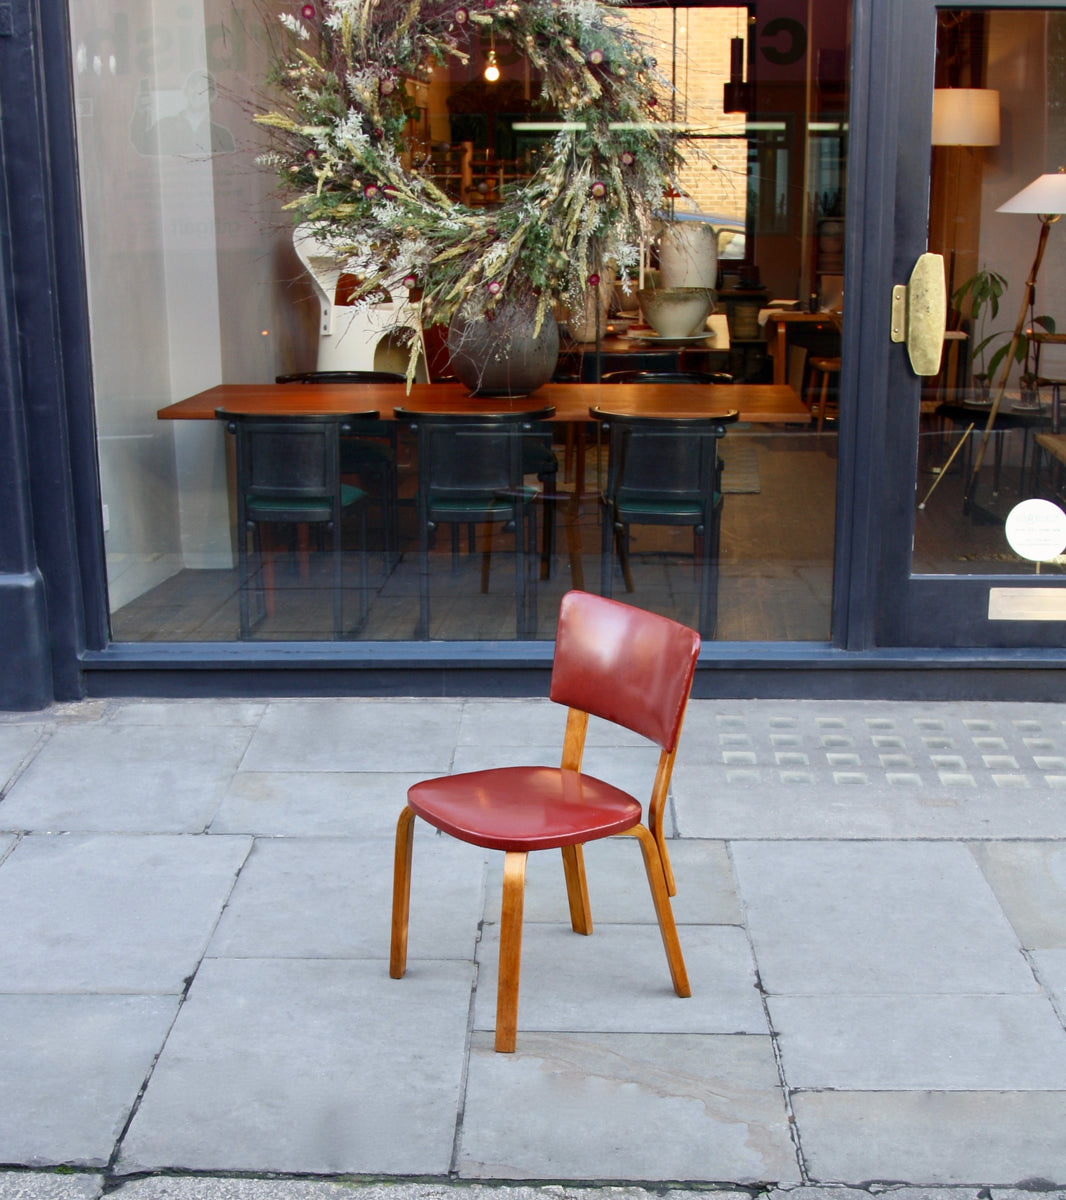 Model No 63 Chair <br> by Alvar Aalto